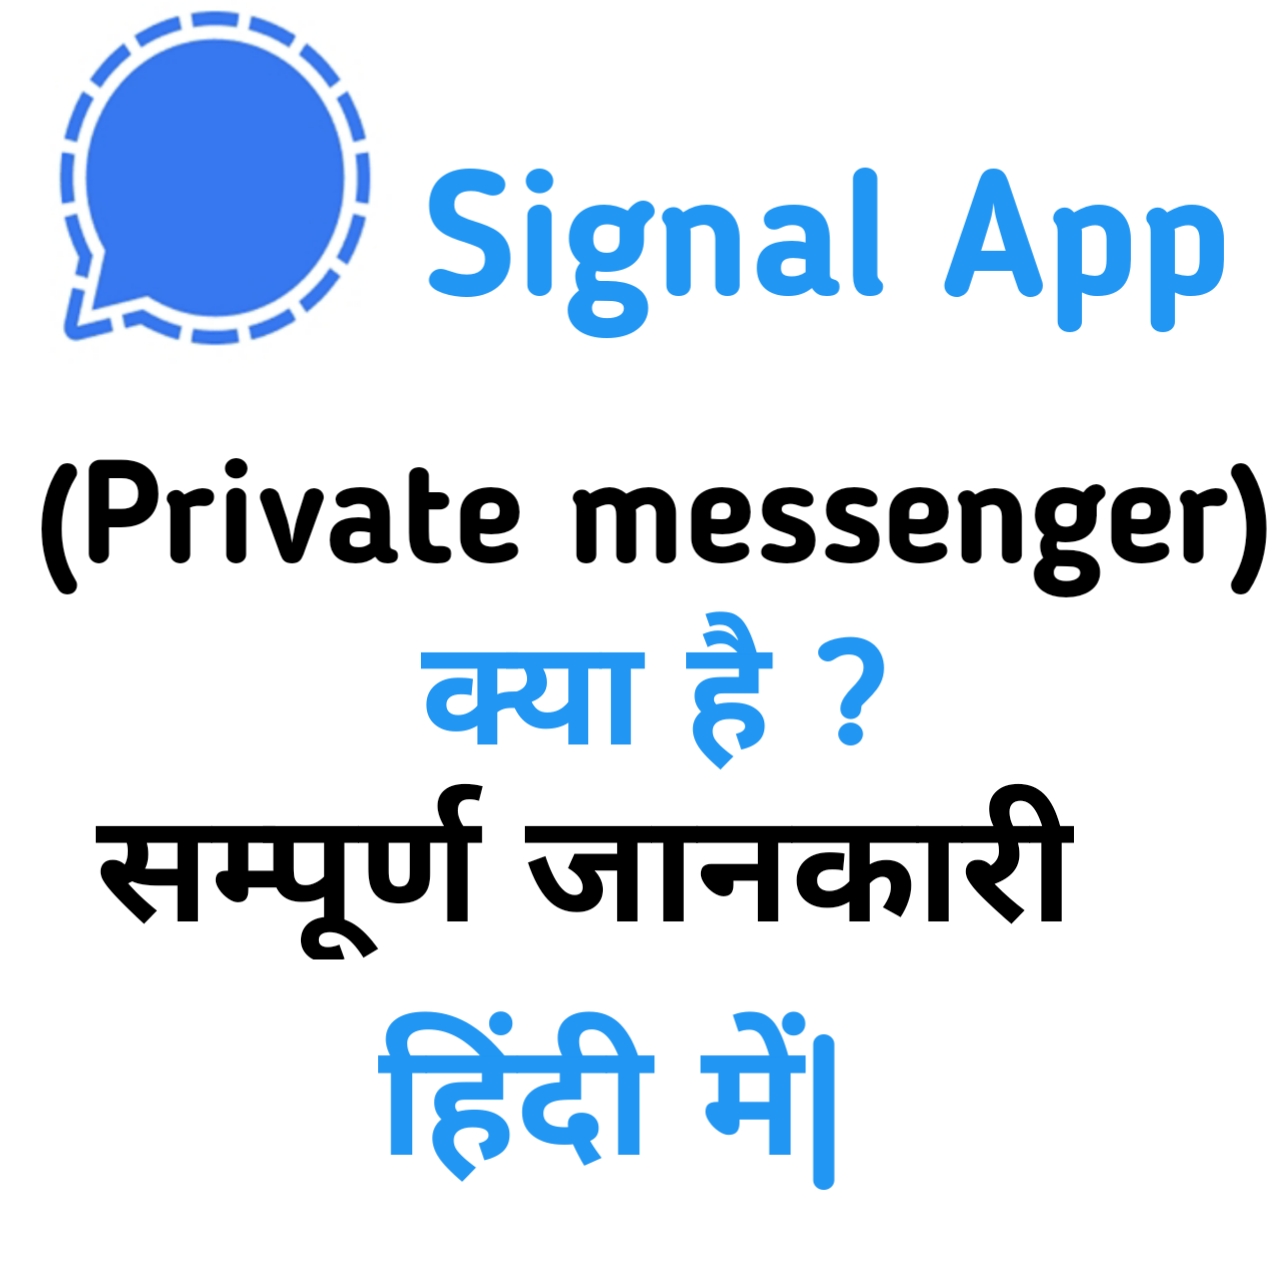 Signal app kya hai kaise istmaal kar sakte hai in hindi